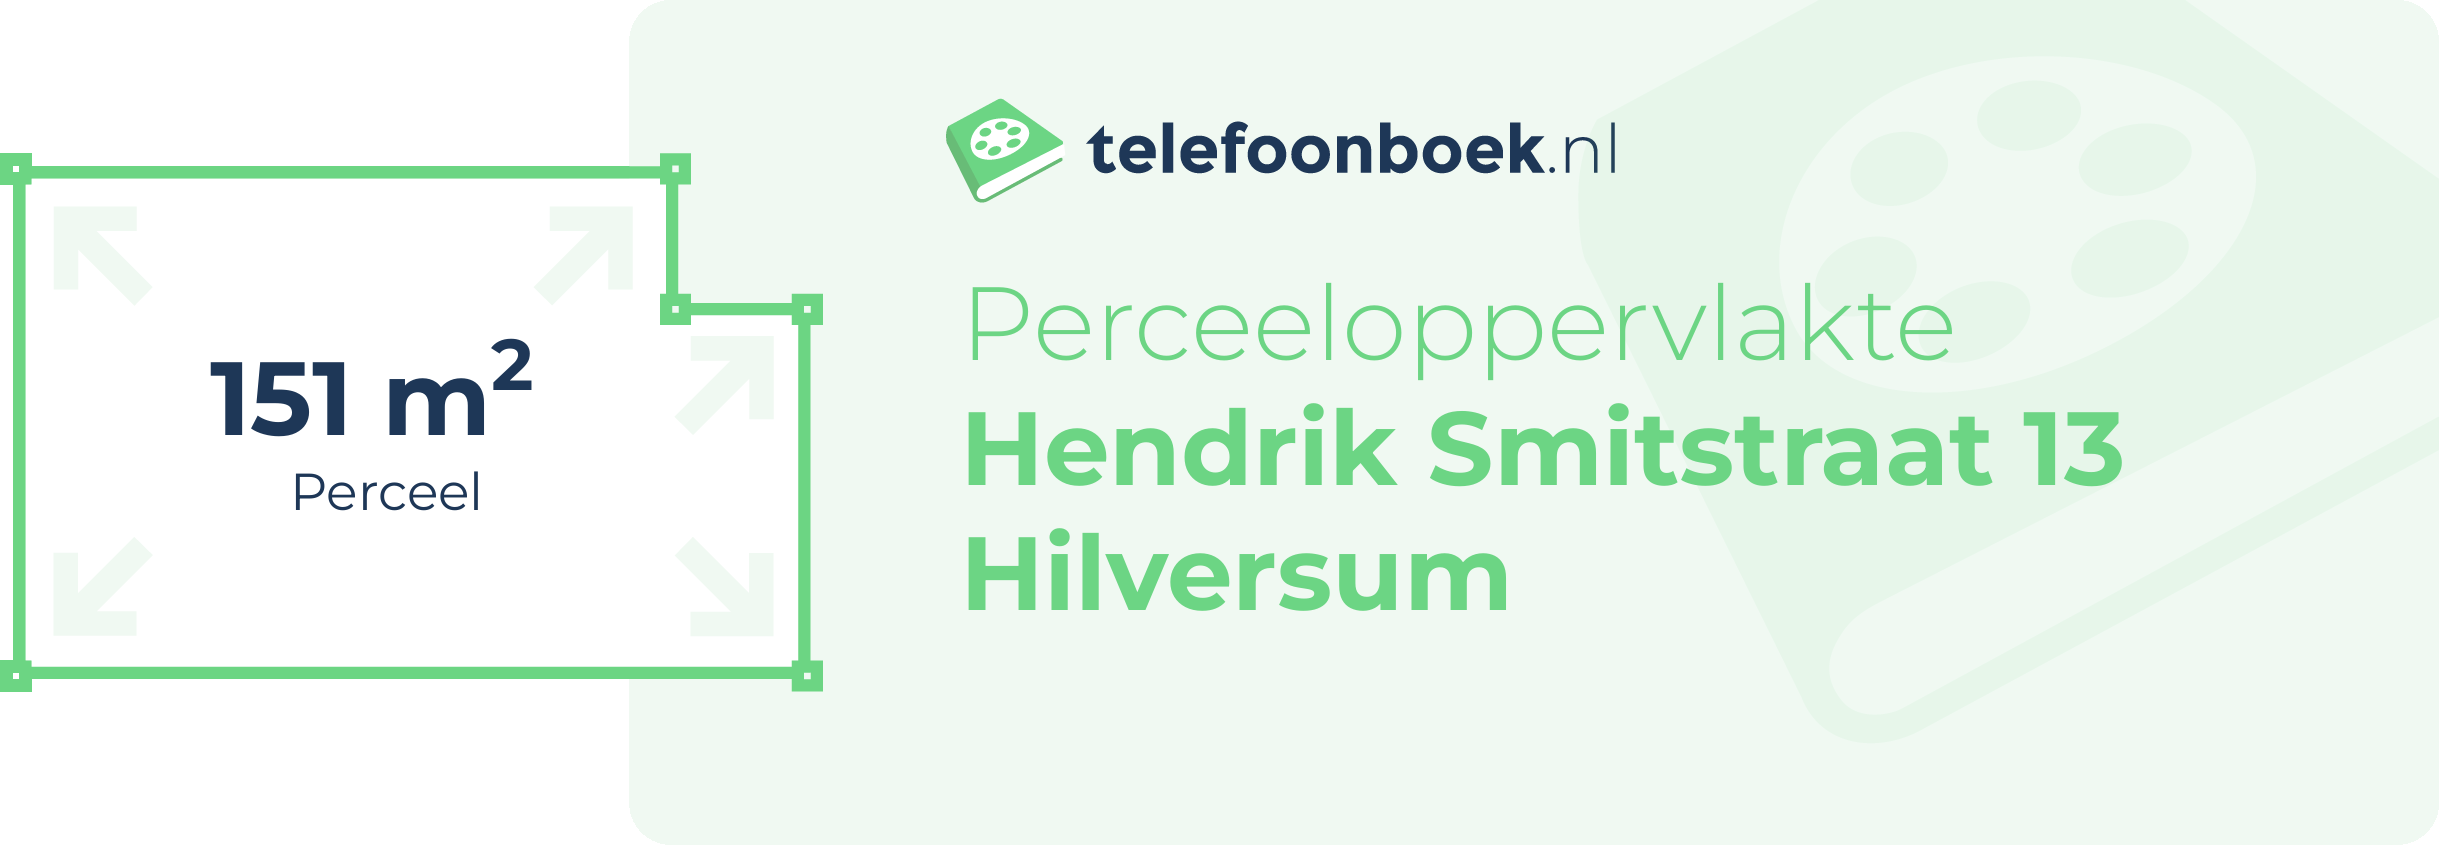 Perceeloppervlakte Hendrik Smitstraat 13 Hilversum